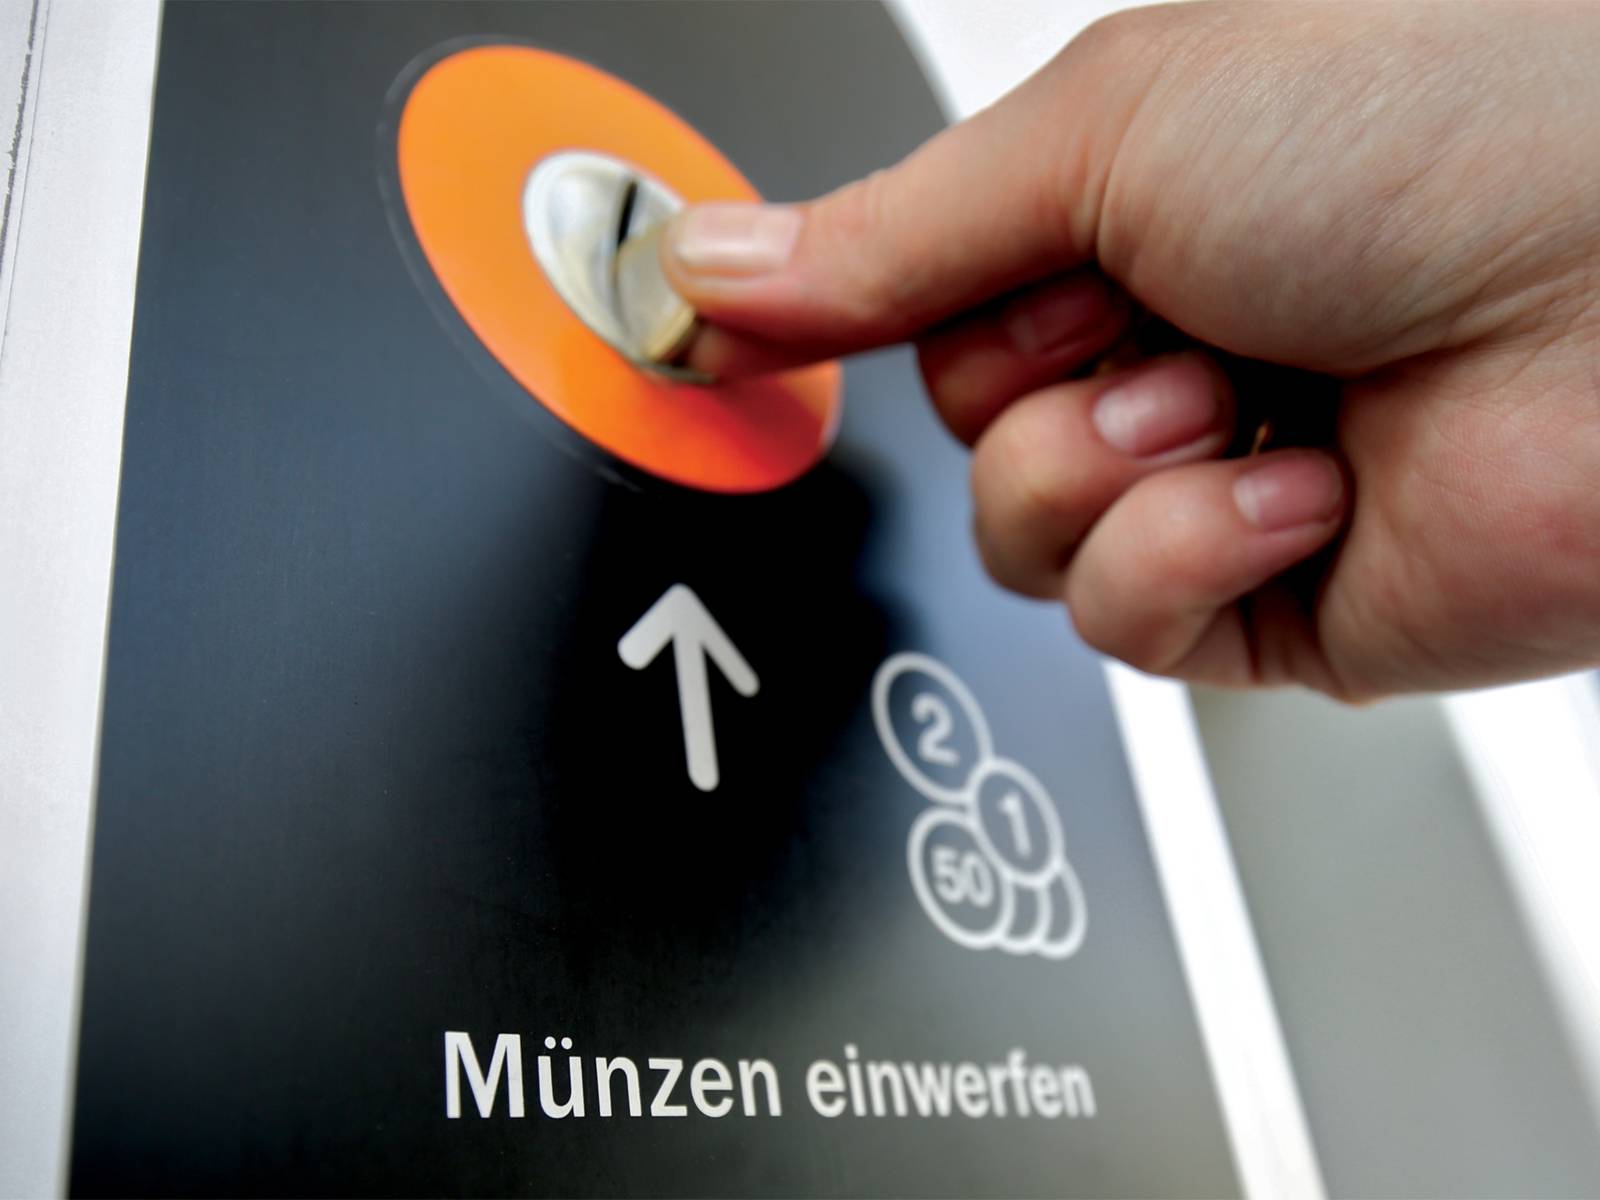 Die Barzahlung an einem Fahrkartenautomat mit Fokus auf den Münzeinwurf samt Beschriftung "Münzen einwerfen".